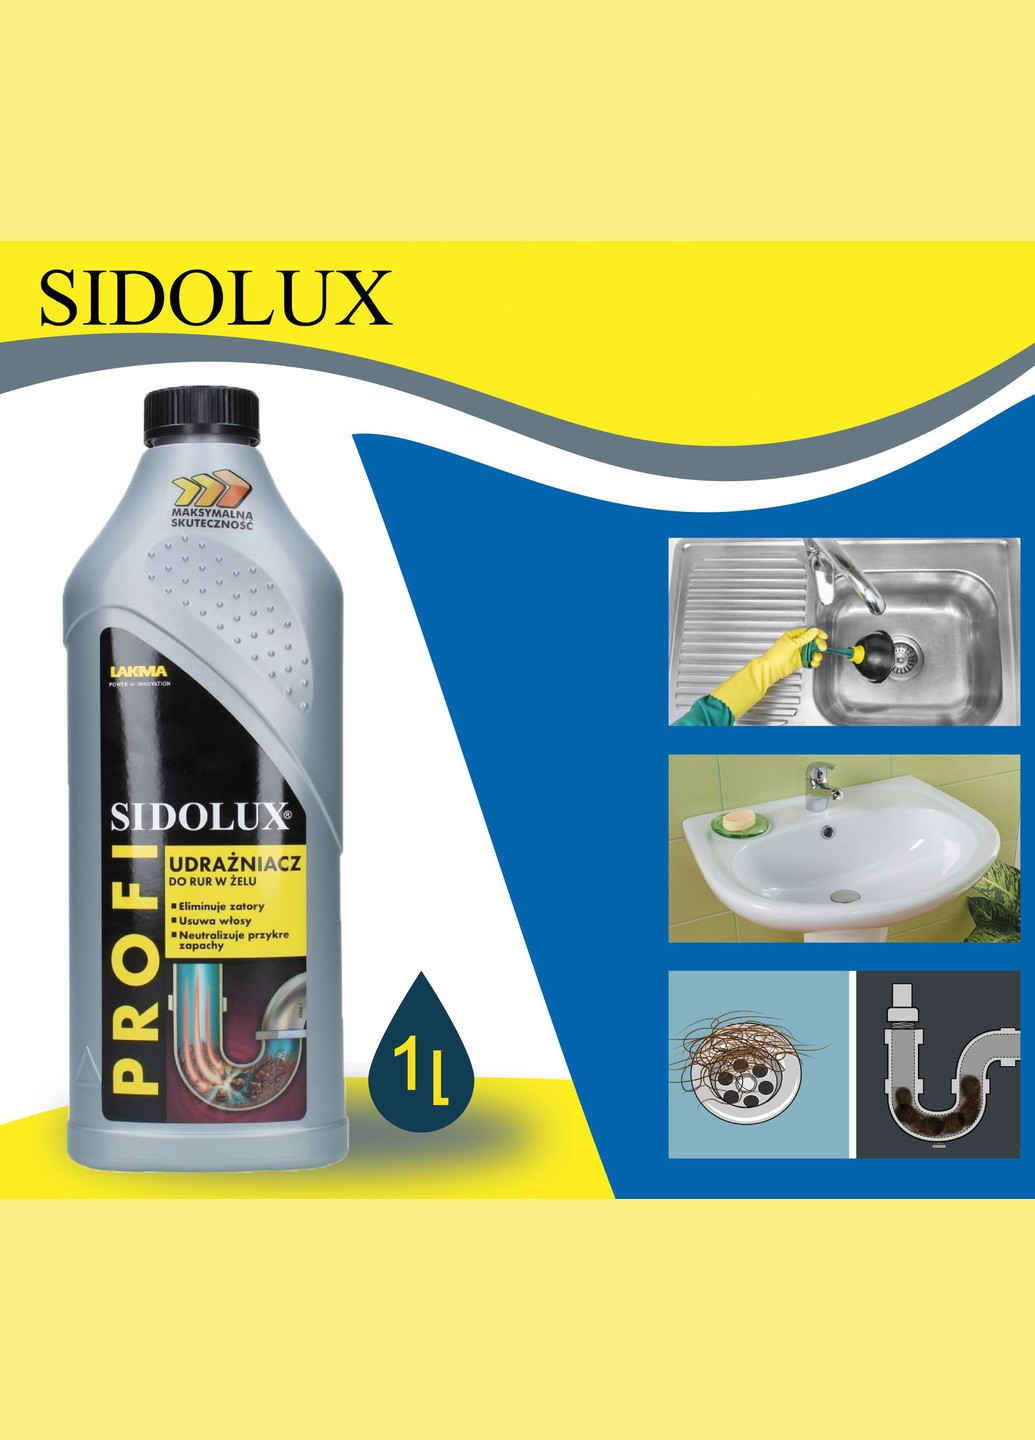 Средство для прочистки стоков, труб, сифонов SIDOLUX PROFI 1л гелевый очиститель для устранения и профилактики засоров в канали Lakma (264209627)